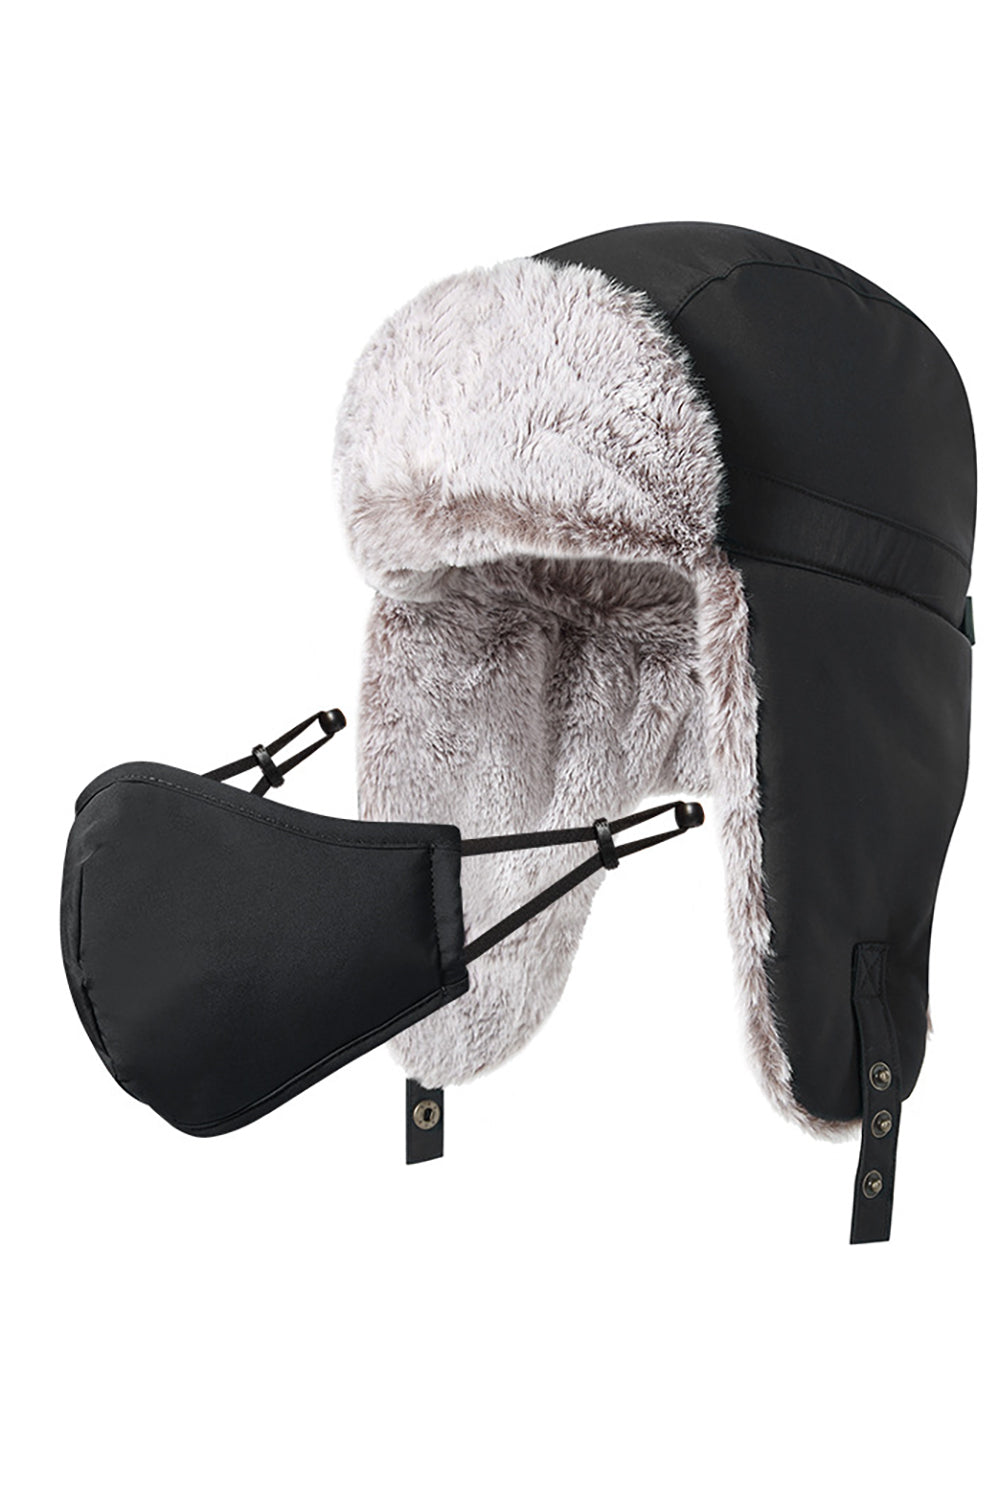 Chapeau de ski épais en polaire marine avec masque détachable